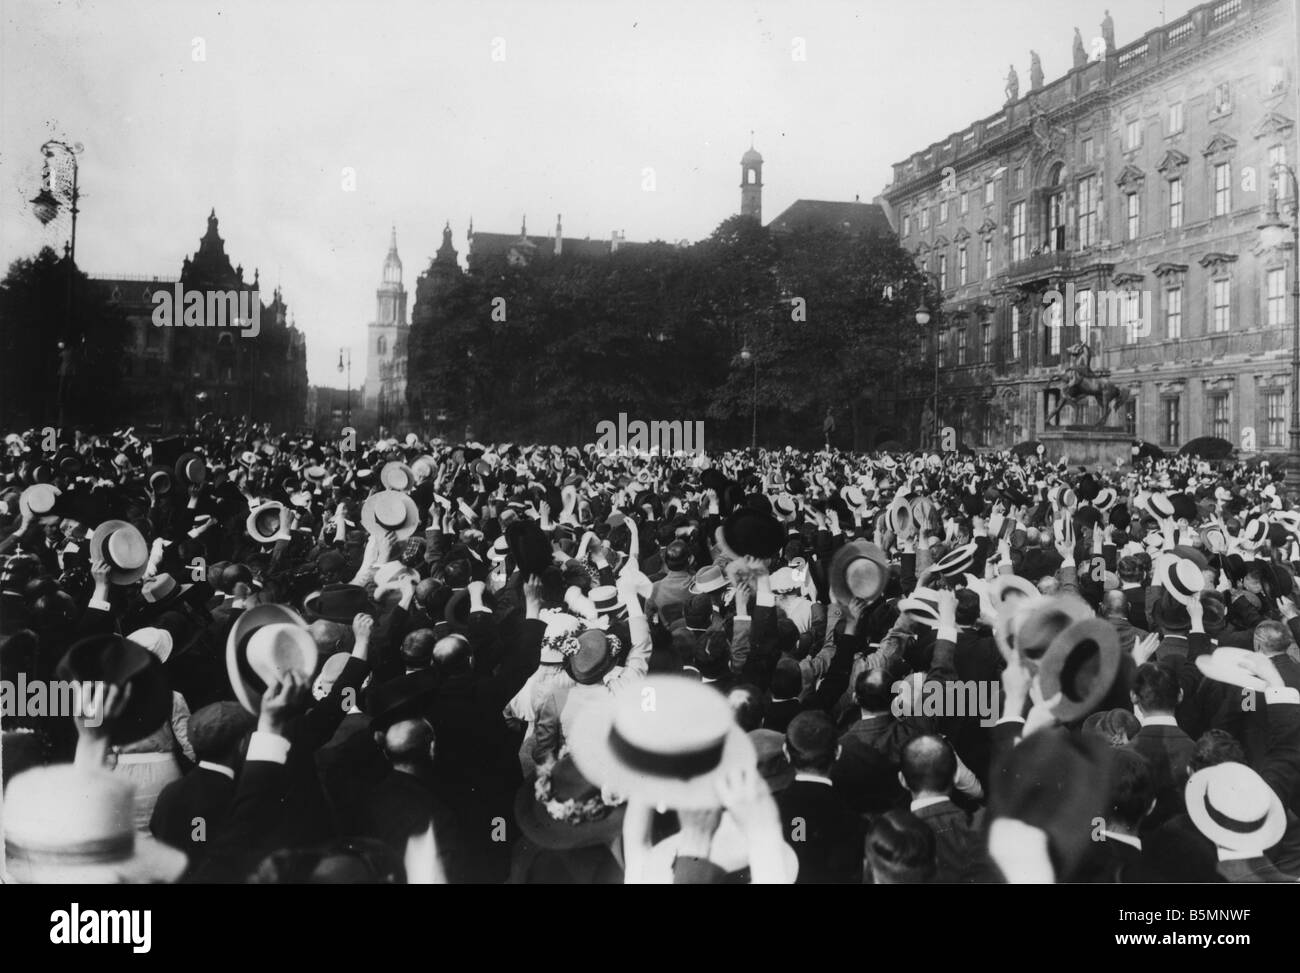 8 1914 8 1 A3 10 E Kaiser Wilhelm Outbreak der Krieg 1914 Weltkrieg Mobilisierung am 31. Juli 1914 in Berlin Menschenmassen vor der Stockfoto